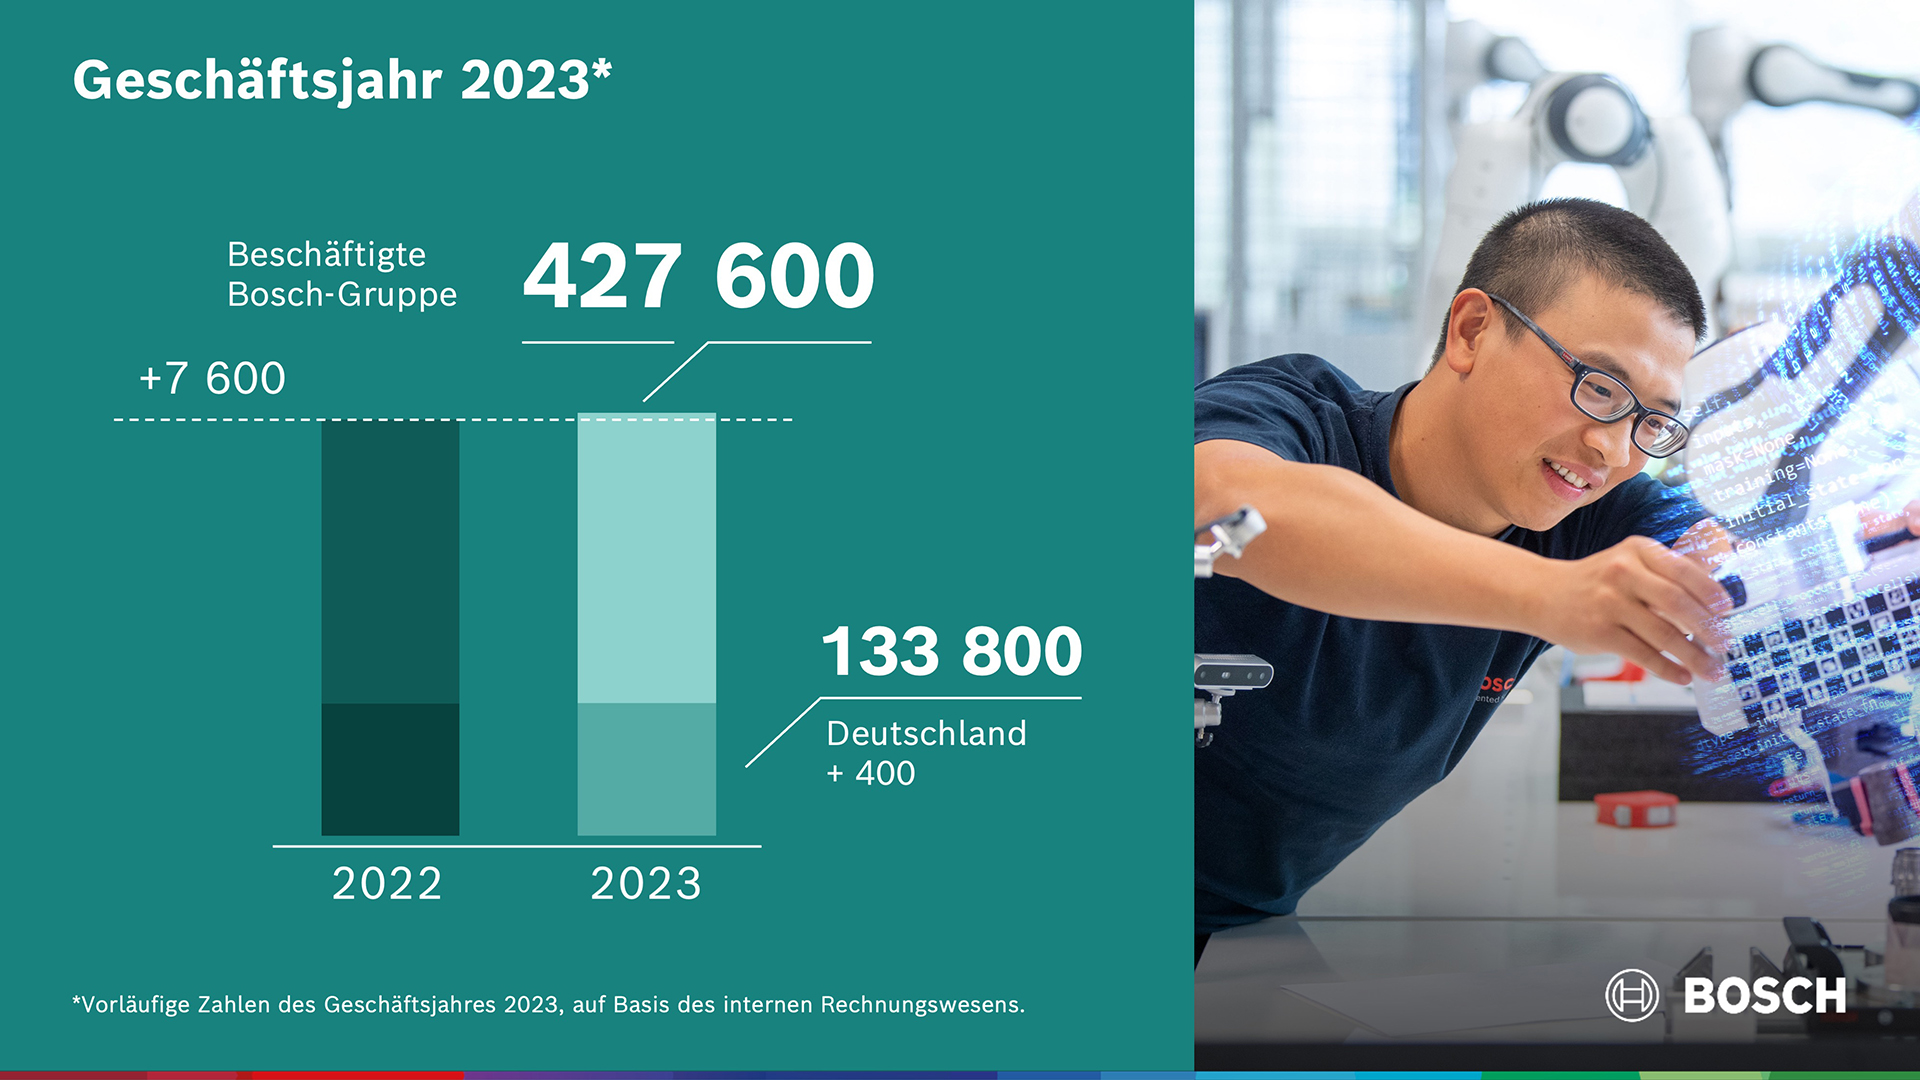 Mitarbeiterentwicklung 2023: Beschäftigung auf stabilem Niveau